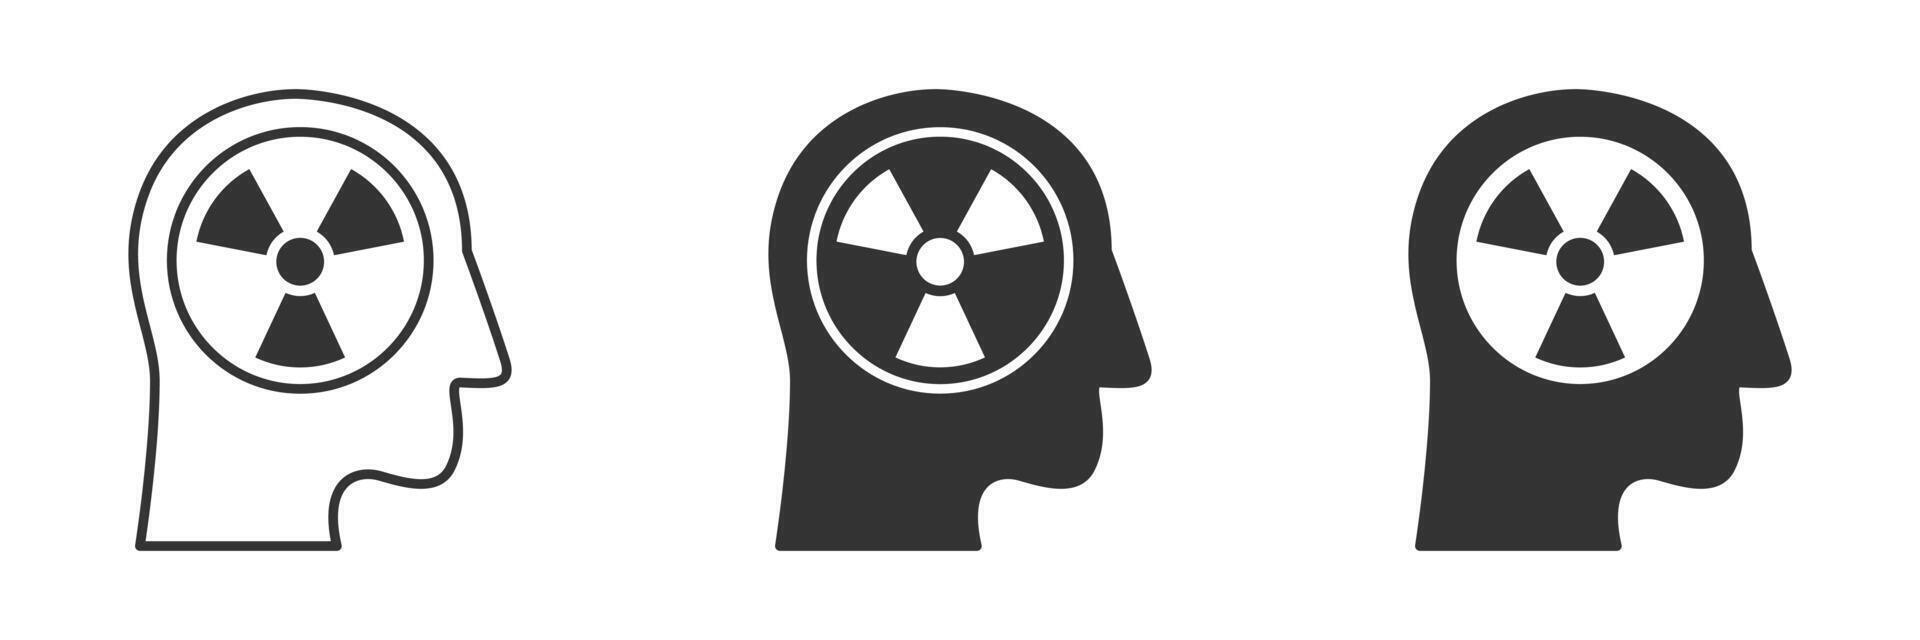 menselijk hoofd icoon met straling symbool binnen. vector illustratie.